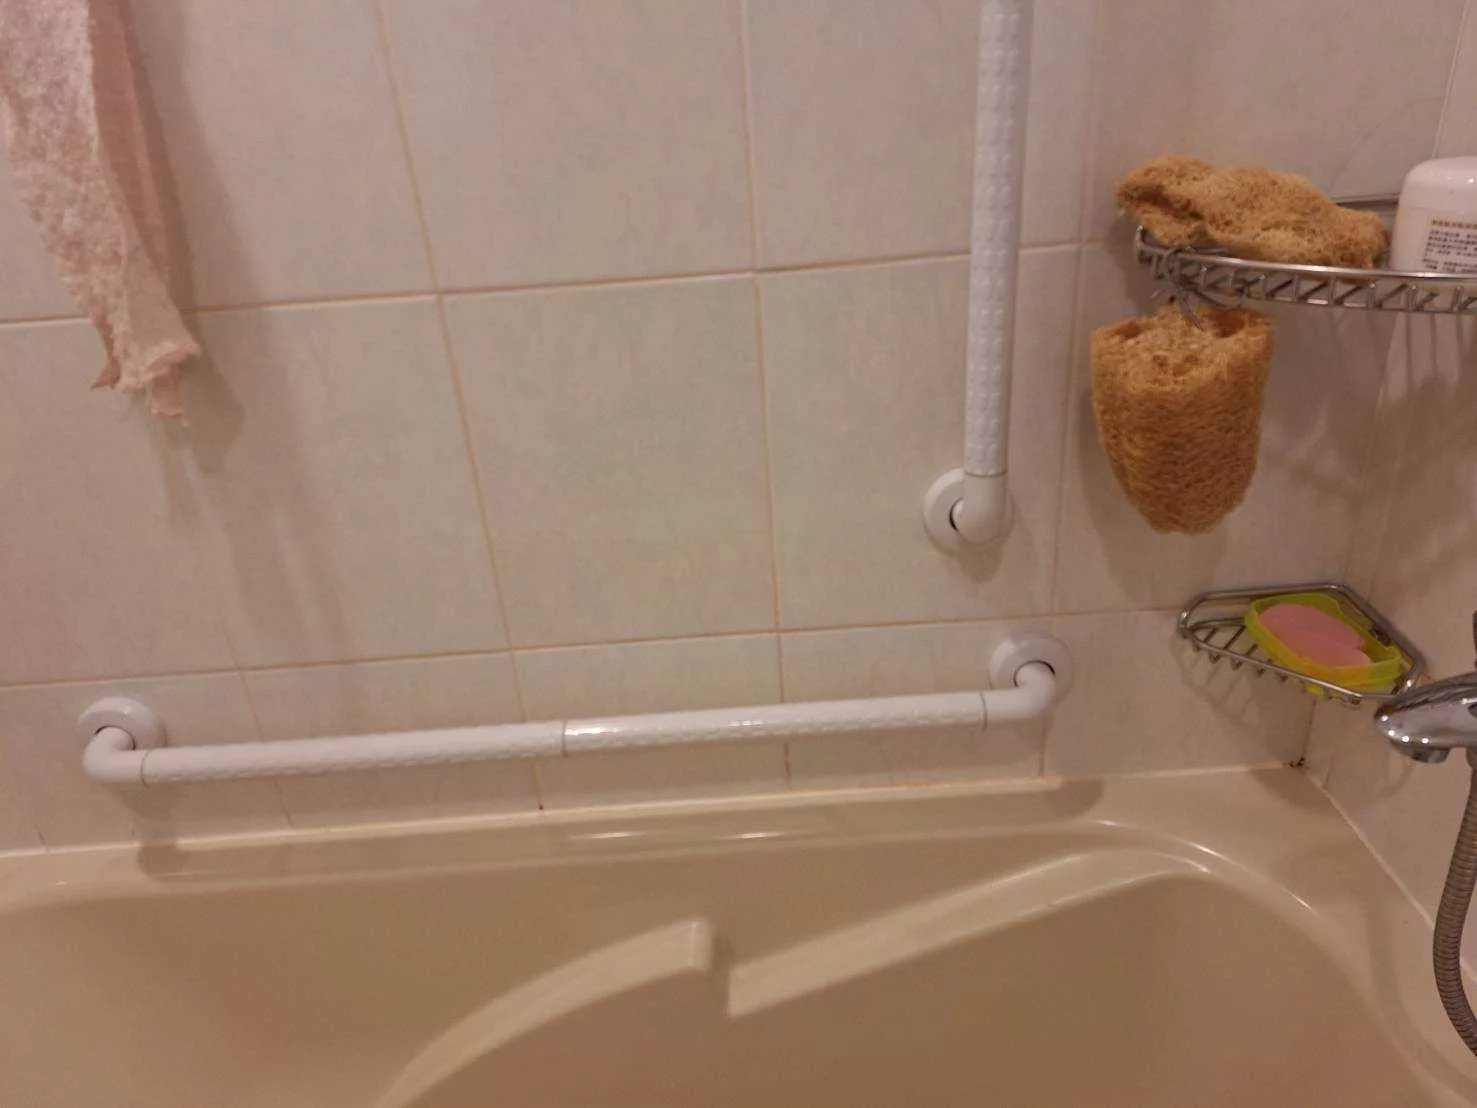 台北松山居家浴室浴缸無障礙設施扶手安裝完工